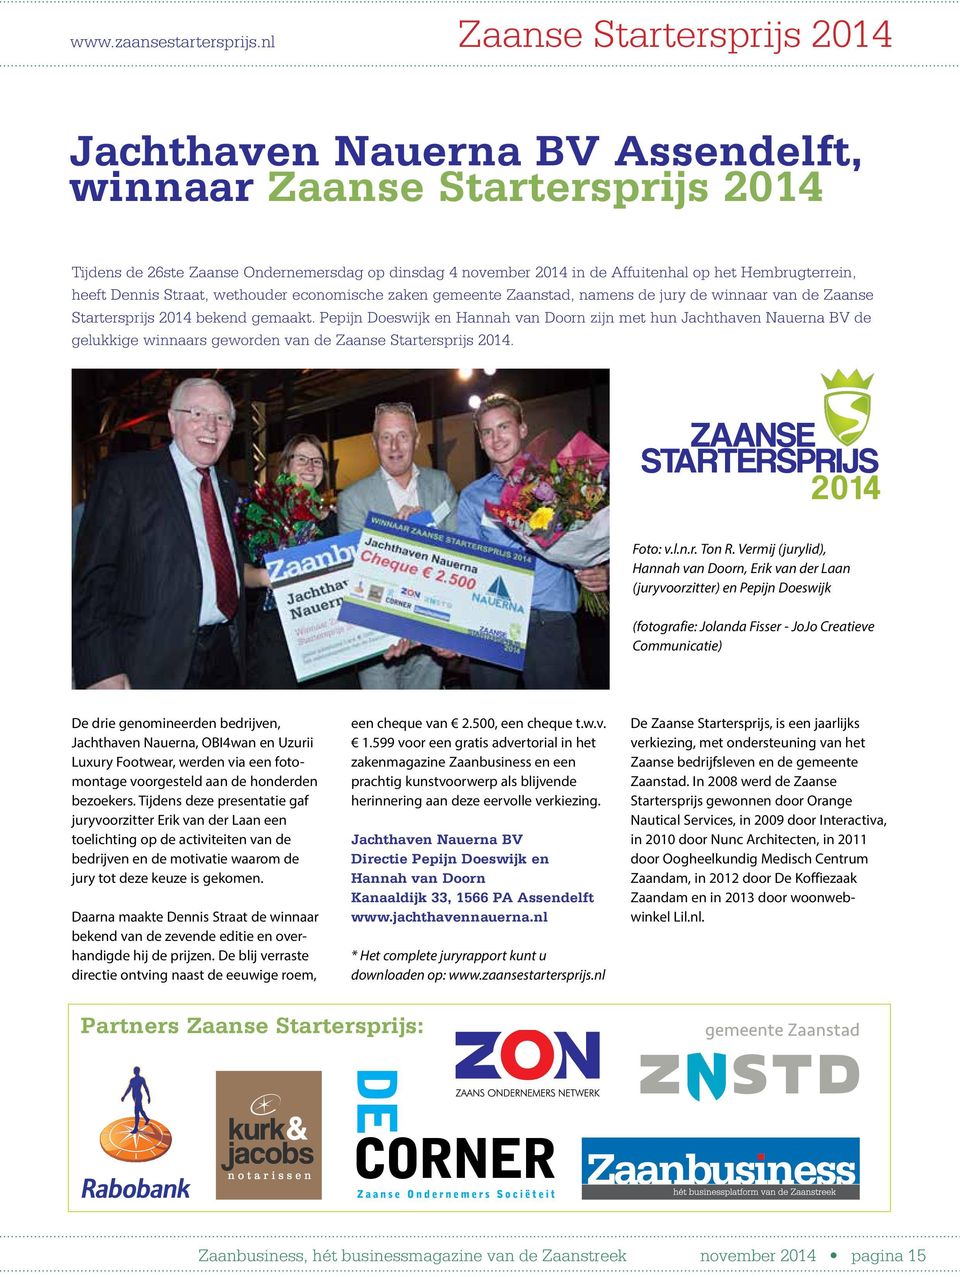 Hembrugterrein, heeft Dennis Straat, wethouder economische zaken gemeente Zaanstad, namens de jury de winnaar van de Zaanse Startersprijs 2014 bekend gemaakt.